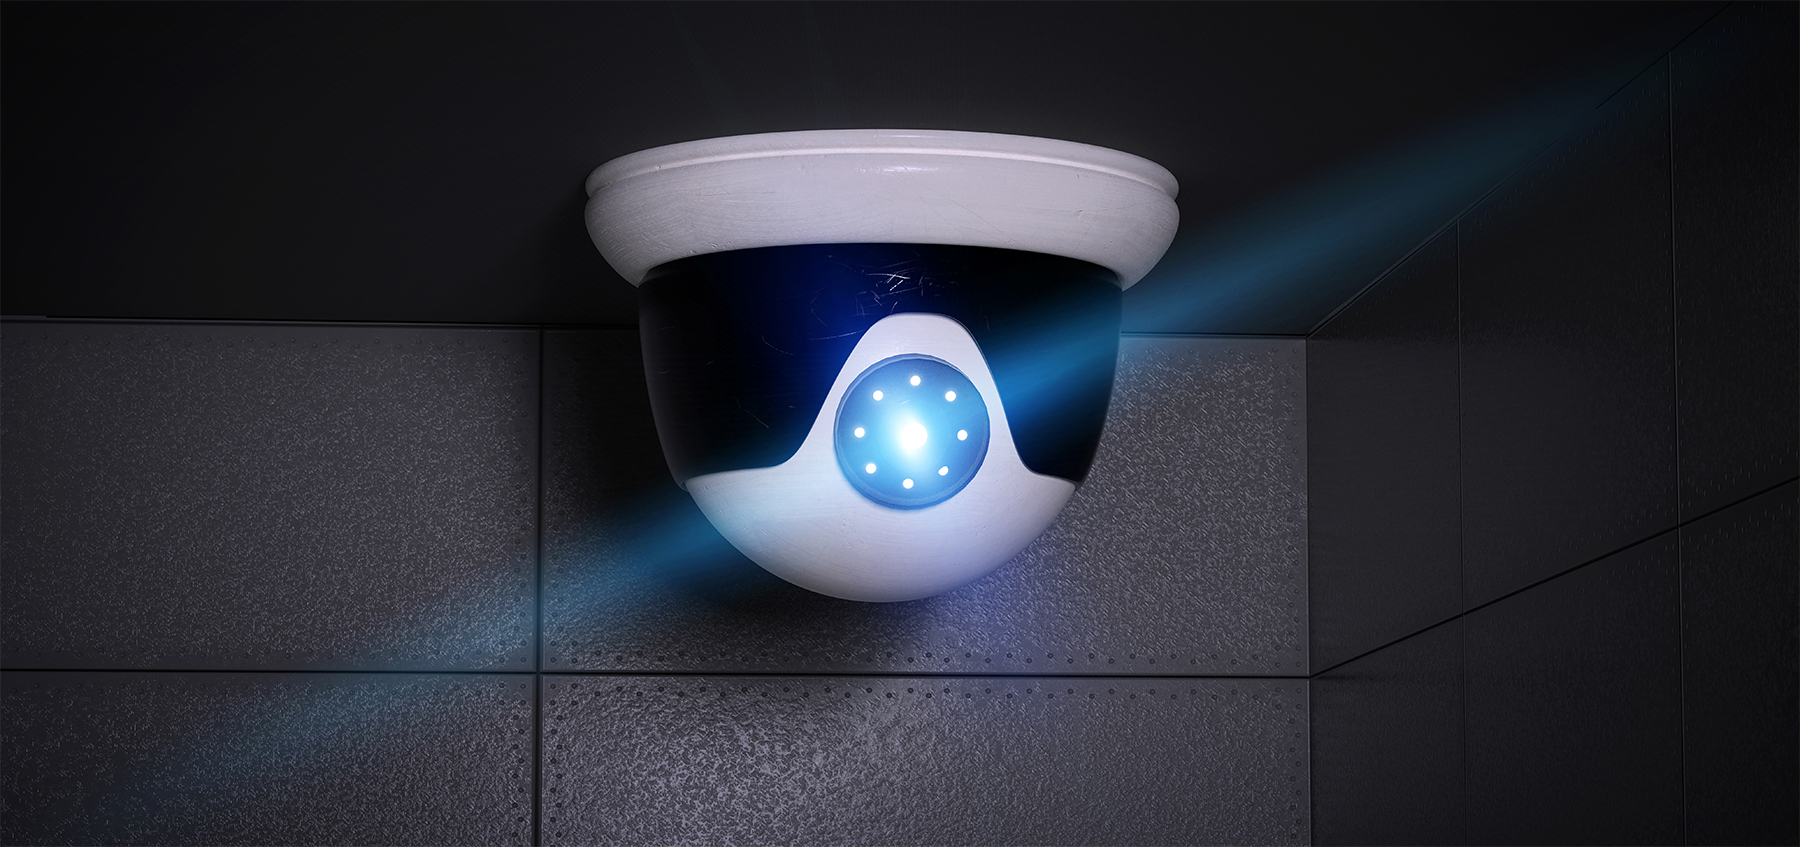 Caméras de surveillance - Alarmes et sécurité